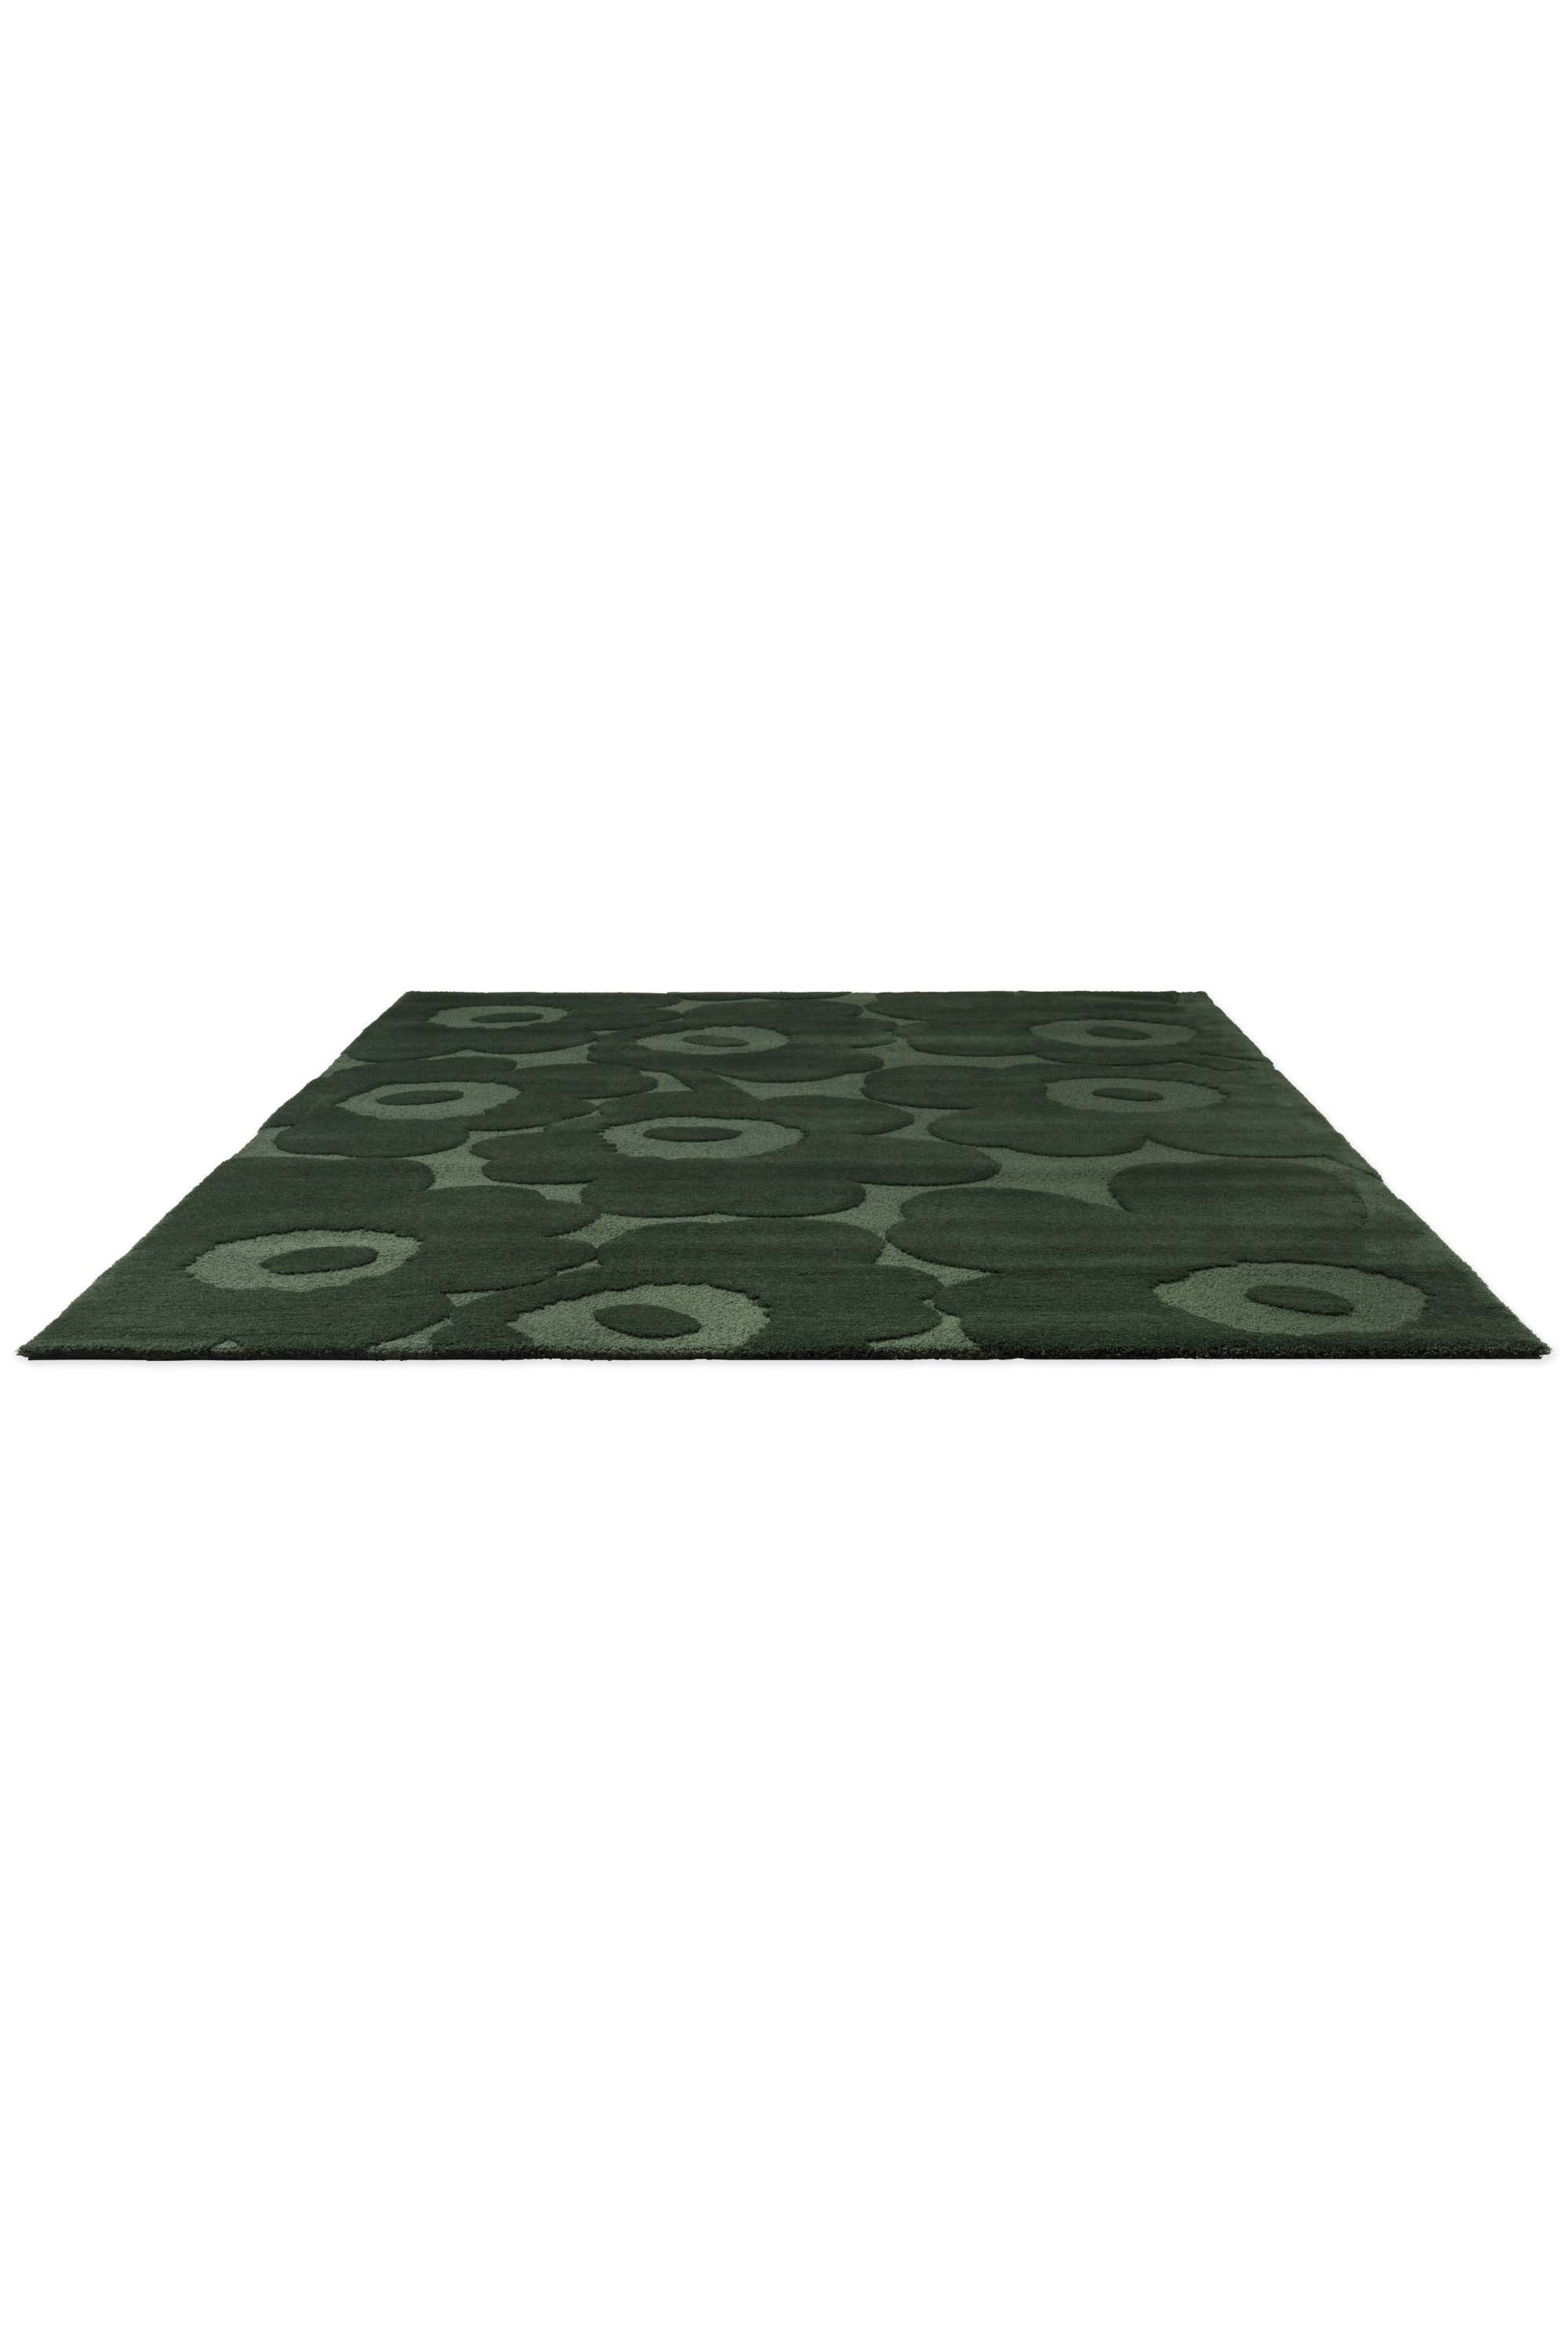 Dark green patterned floral rug 